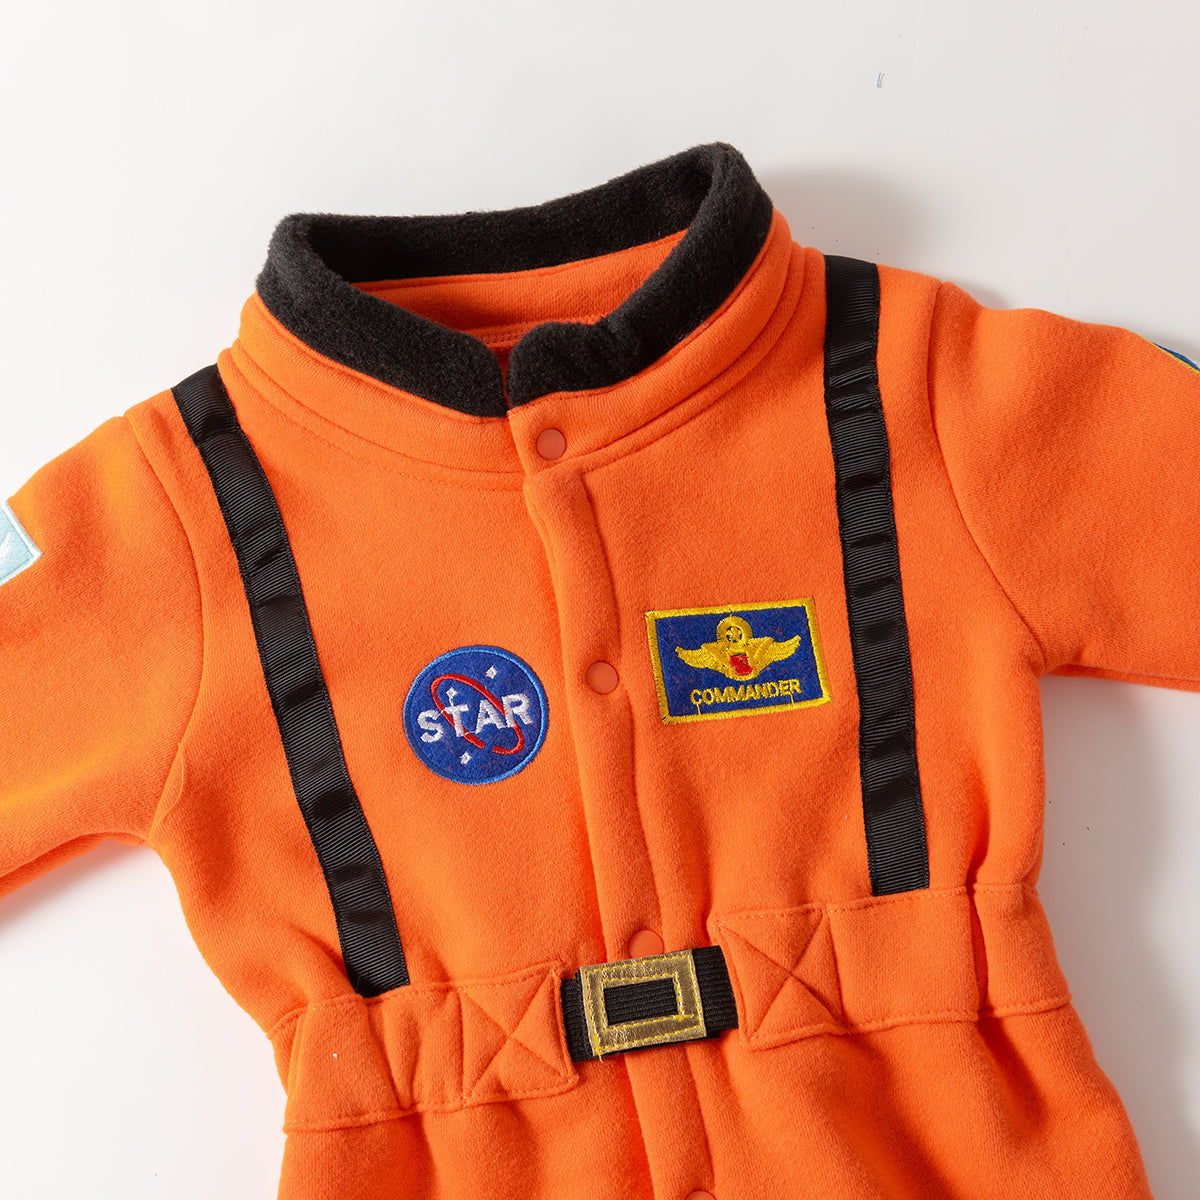 Déguisement de cosmonaute pour bébé et enfant